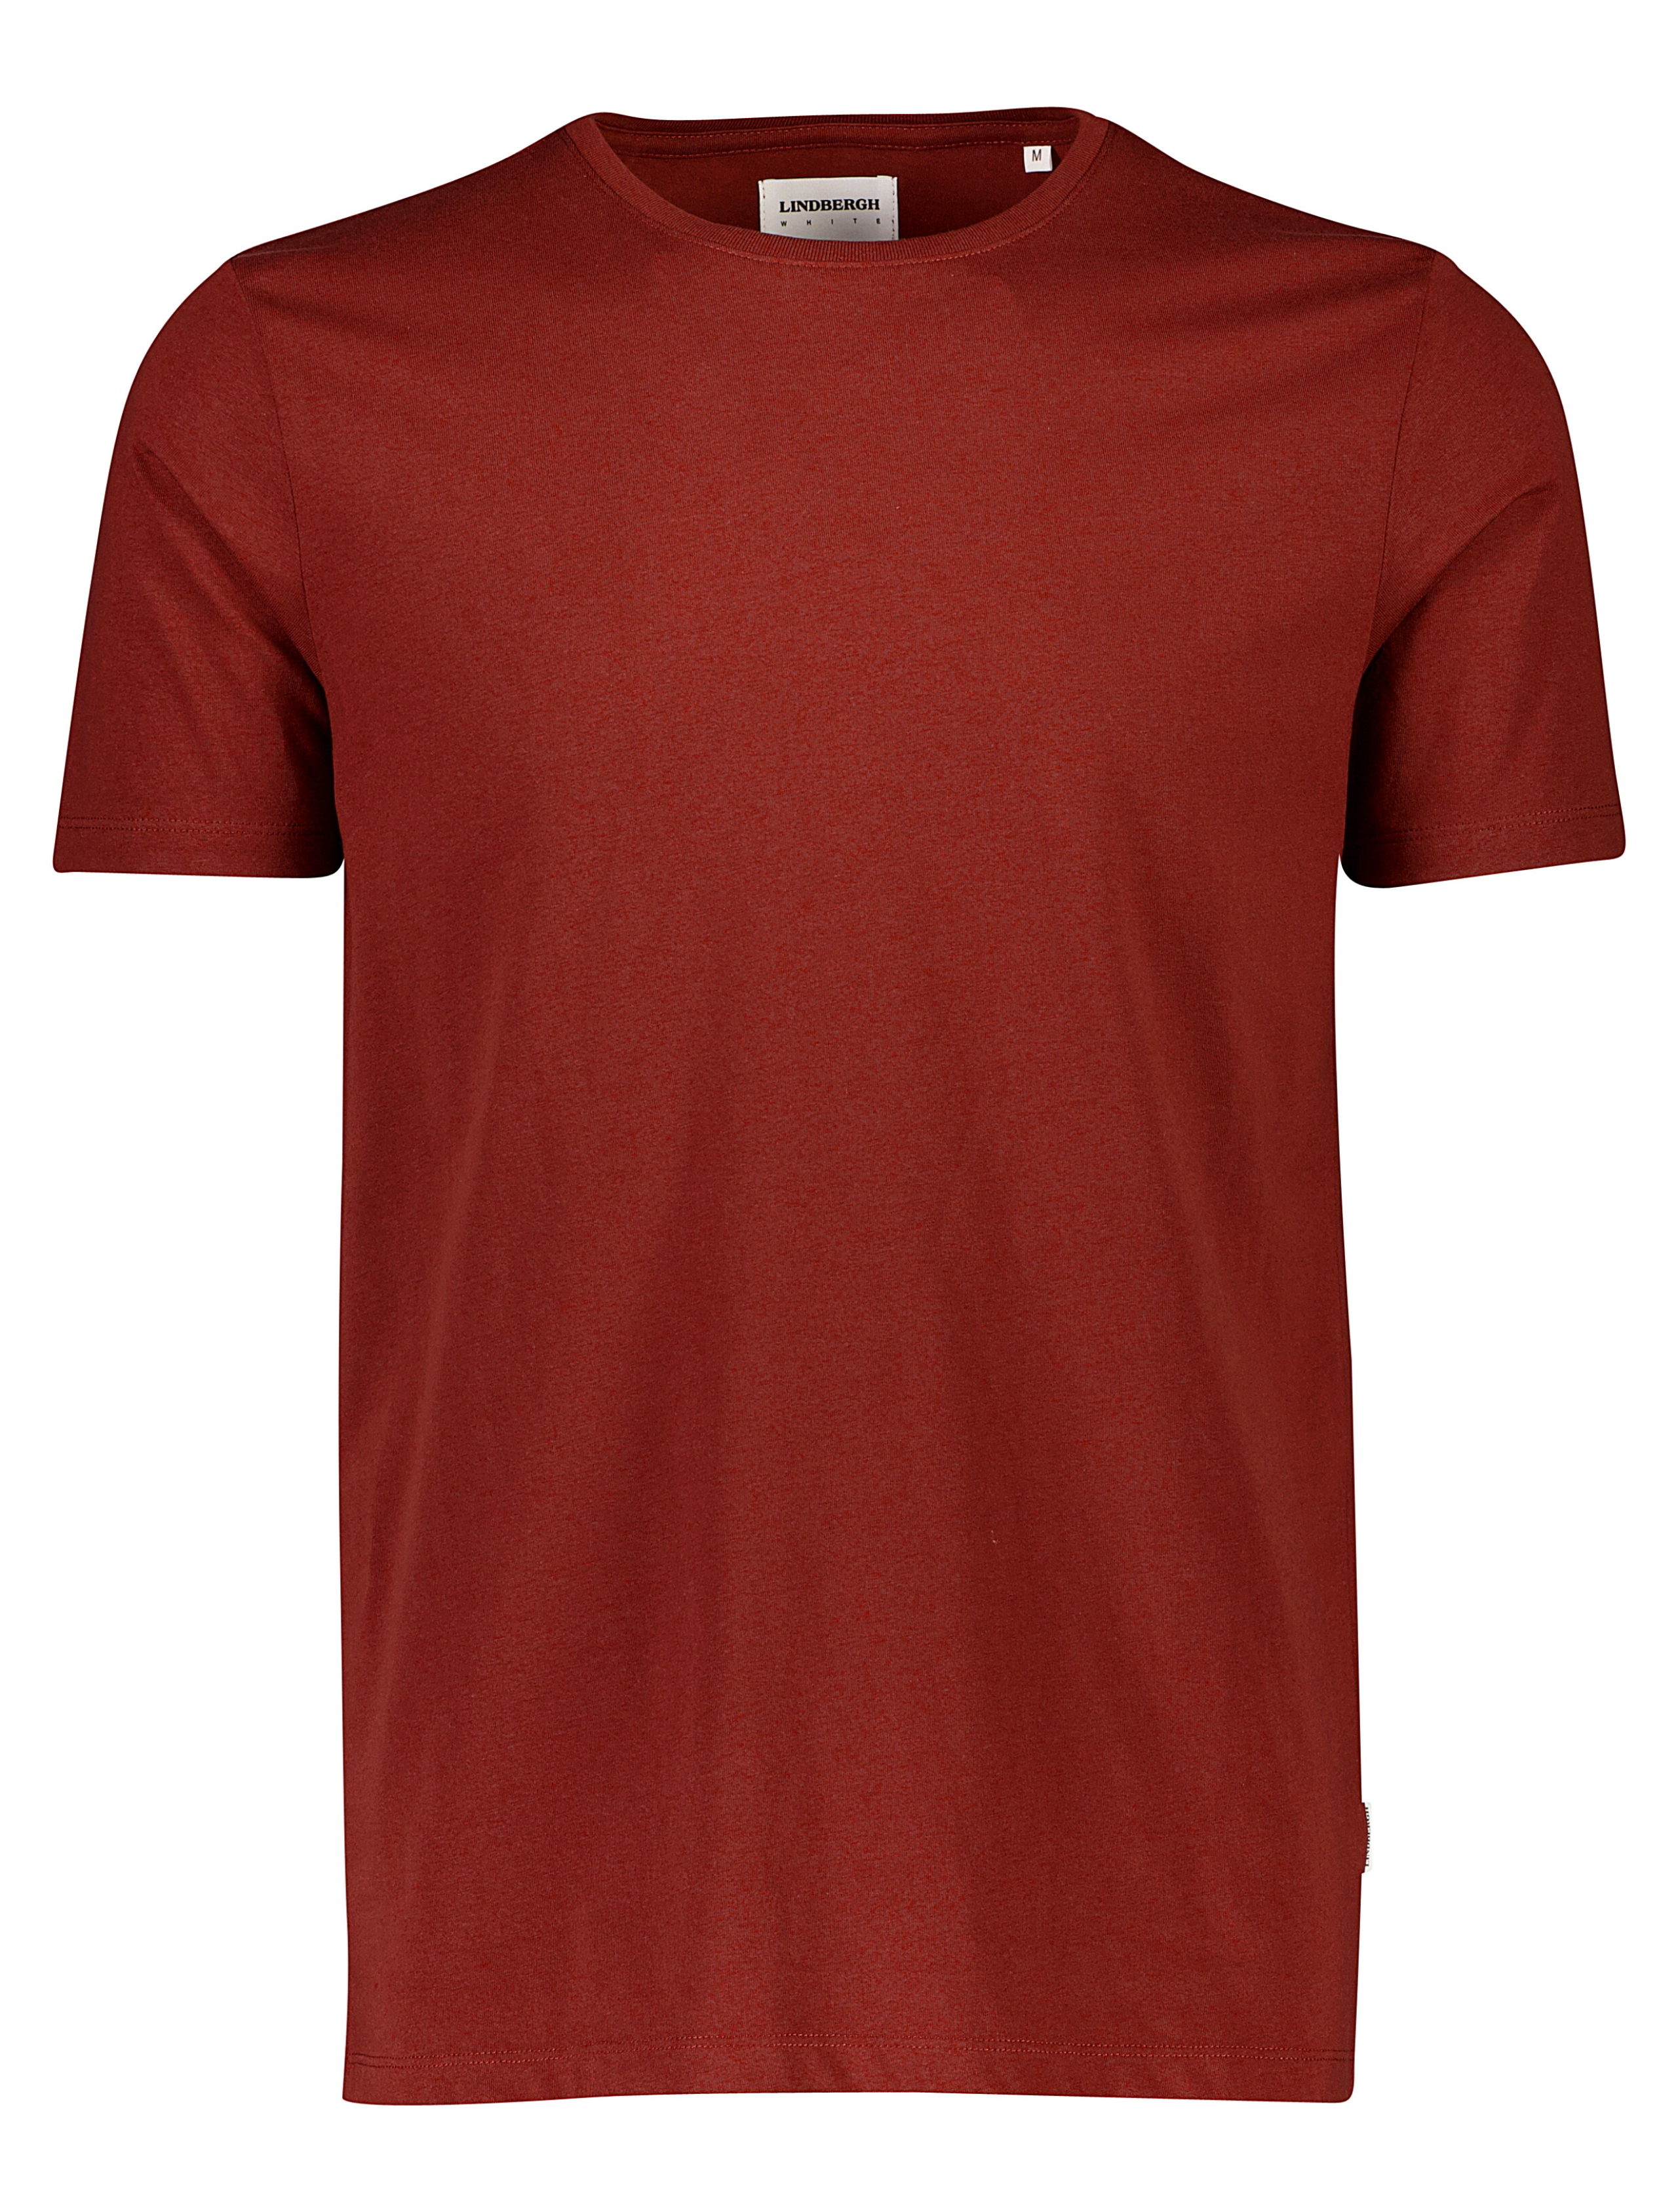 Lindbergh T-shirt rød / burnt red mix